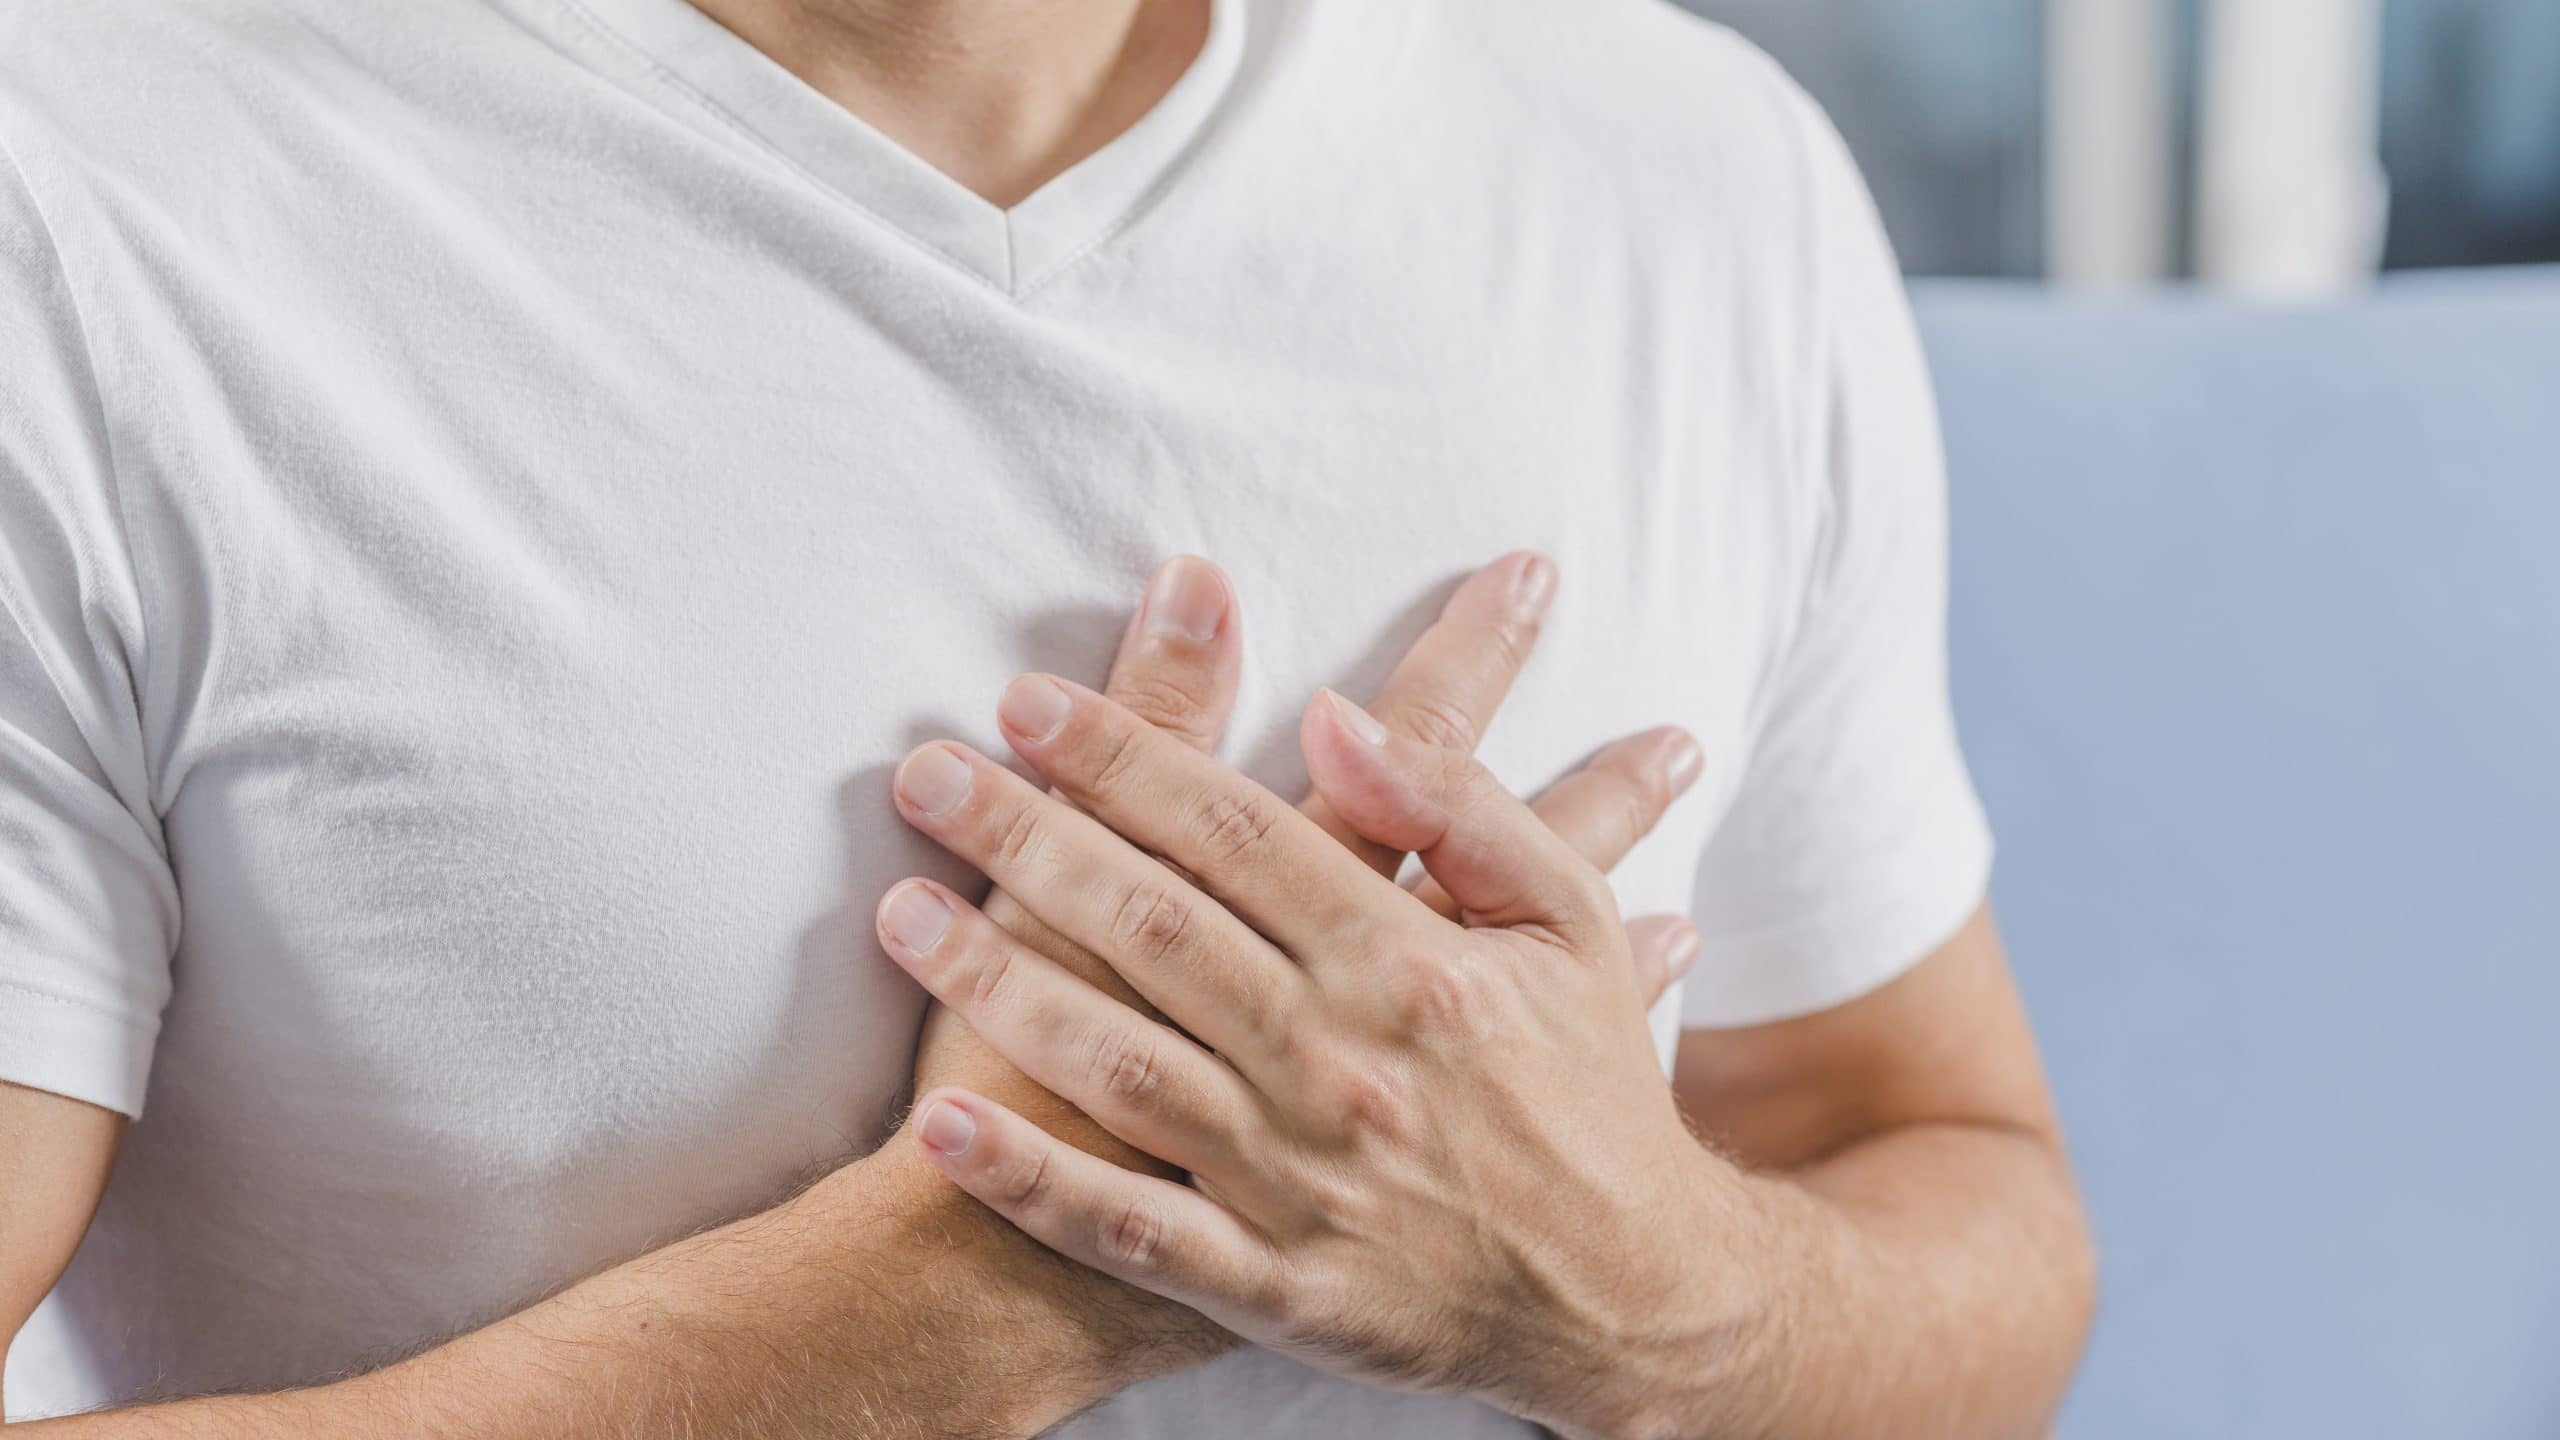 Cơn đau ngực sau Covid-19 có thể có những tác động nghiêm trọng đến sức khỏe không?
